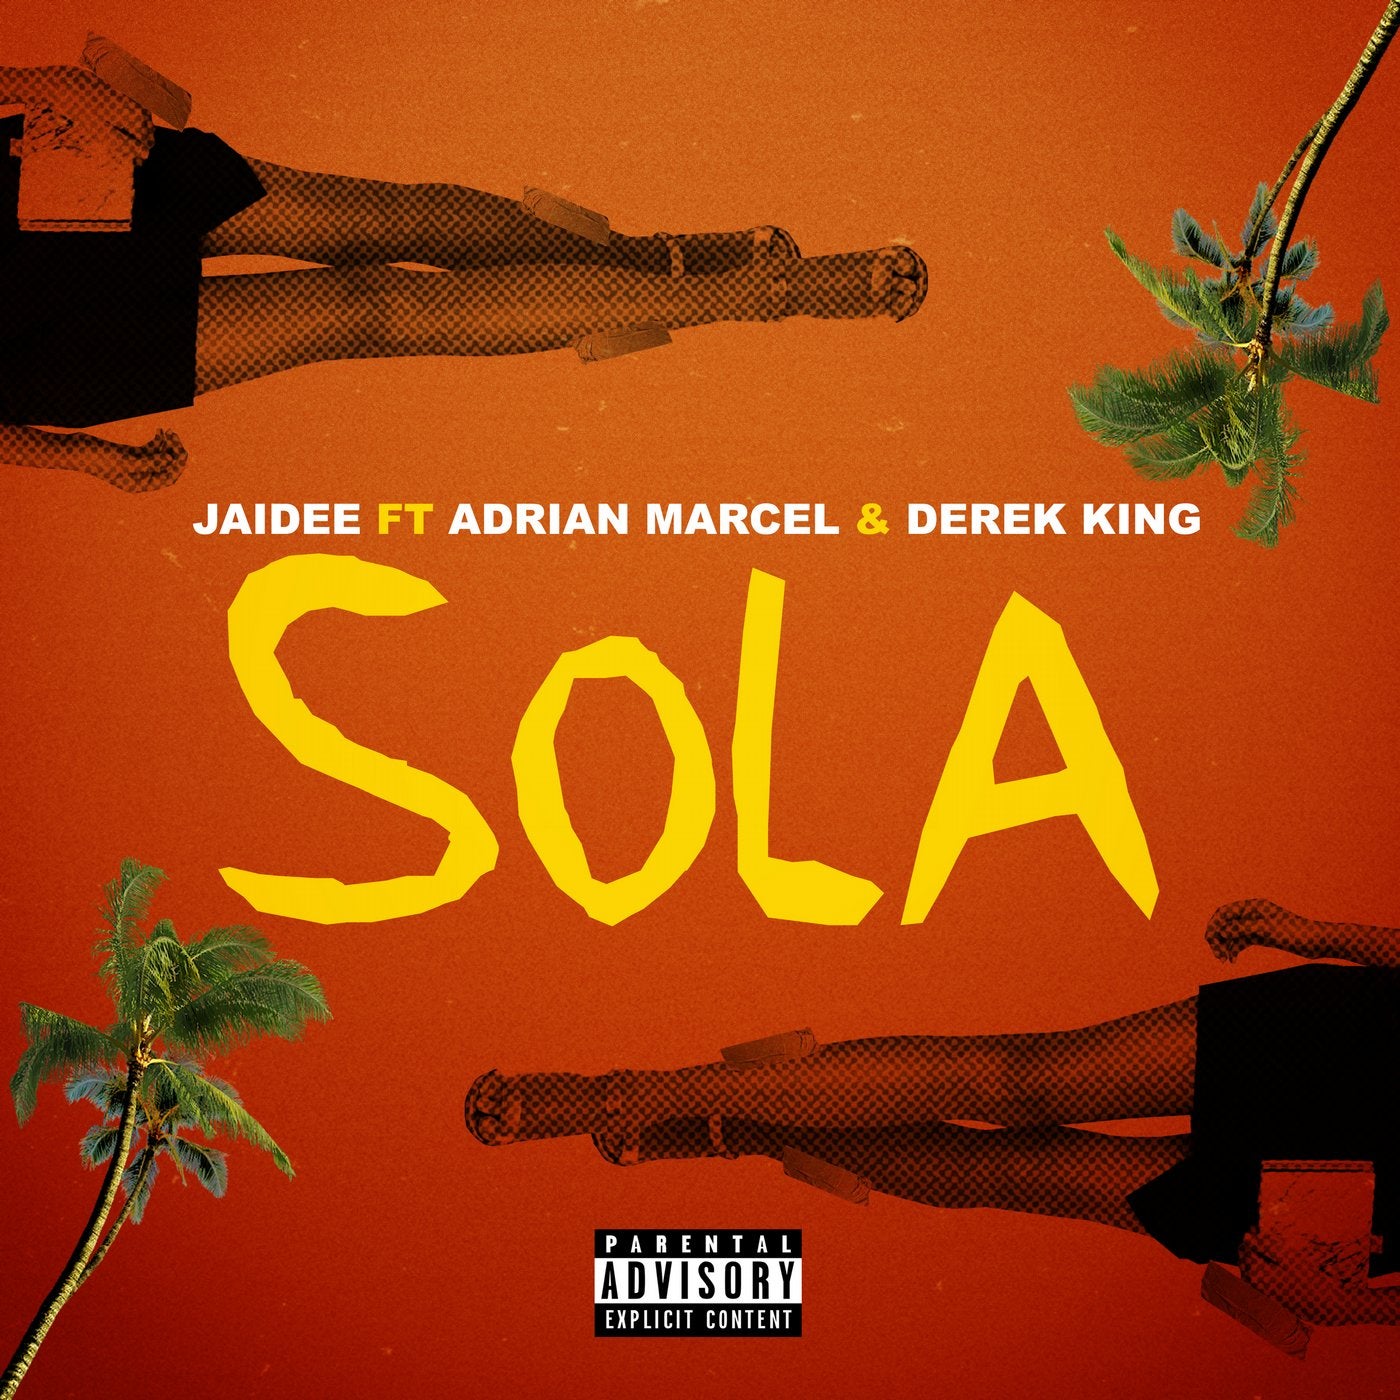 Sola (feat. Adrian Marcel & Derek King)